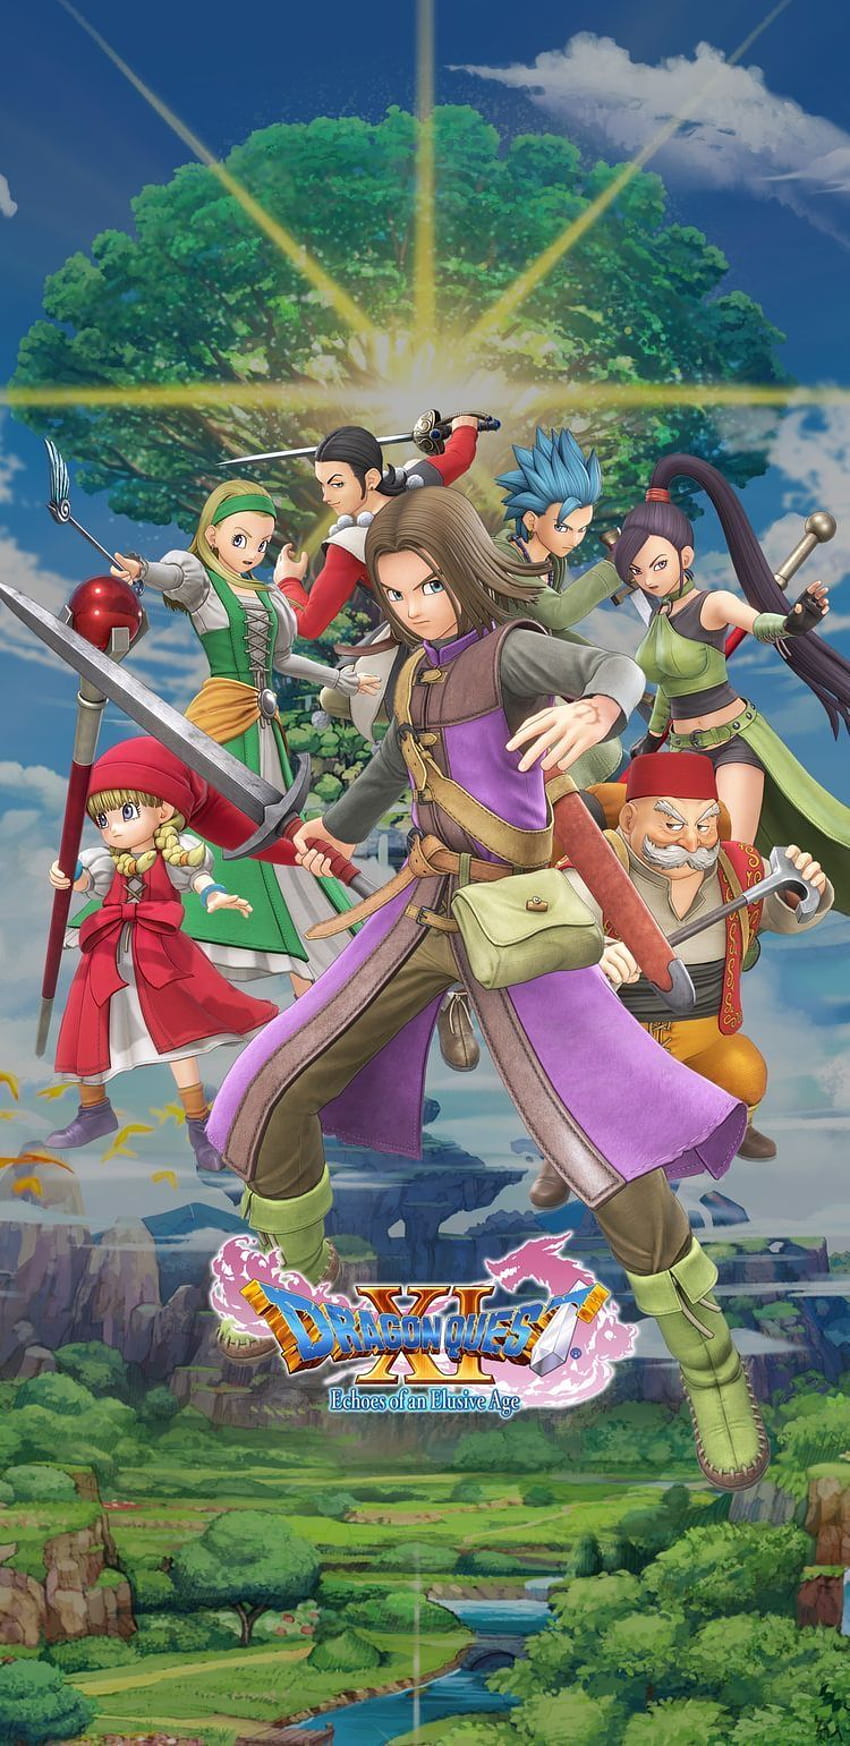 Dragon Quest XI pada tahun 2020. Pencarian naga, Naga, Pedang dan sihir, Pencarian Naga 11 wallpaper ponsel HD